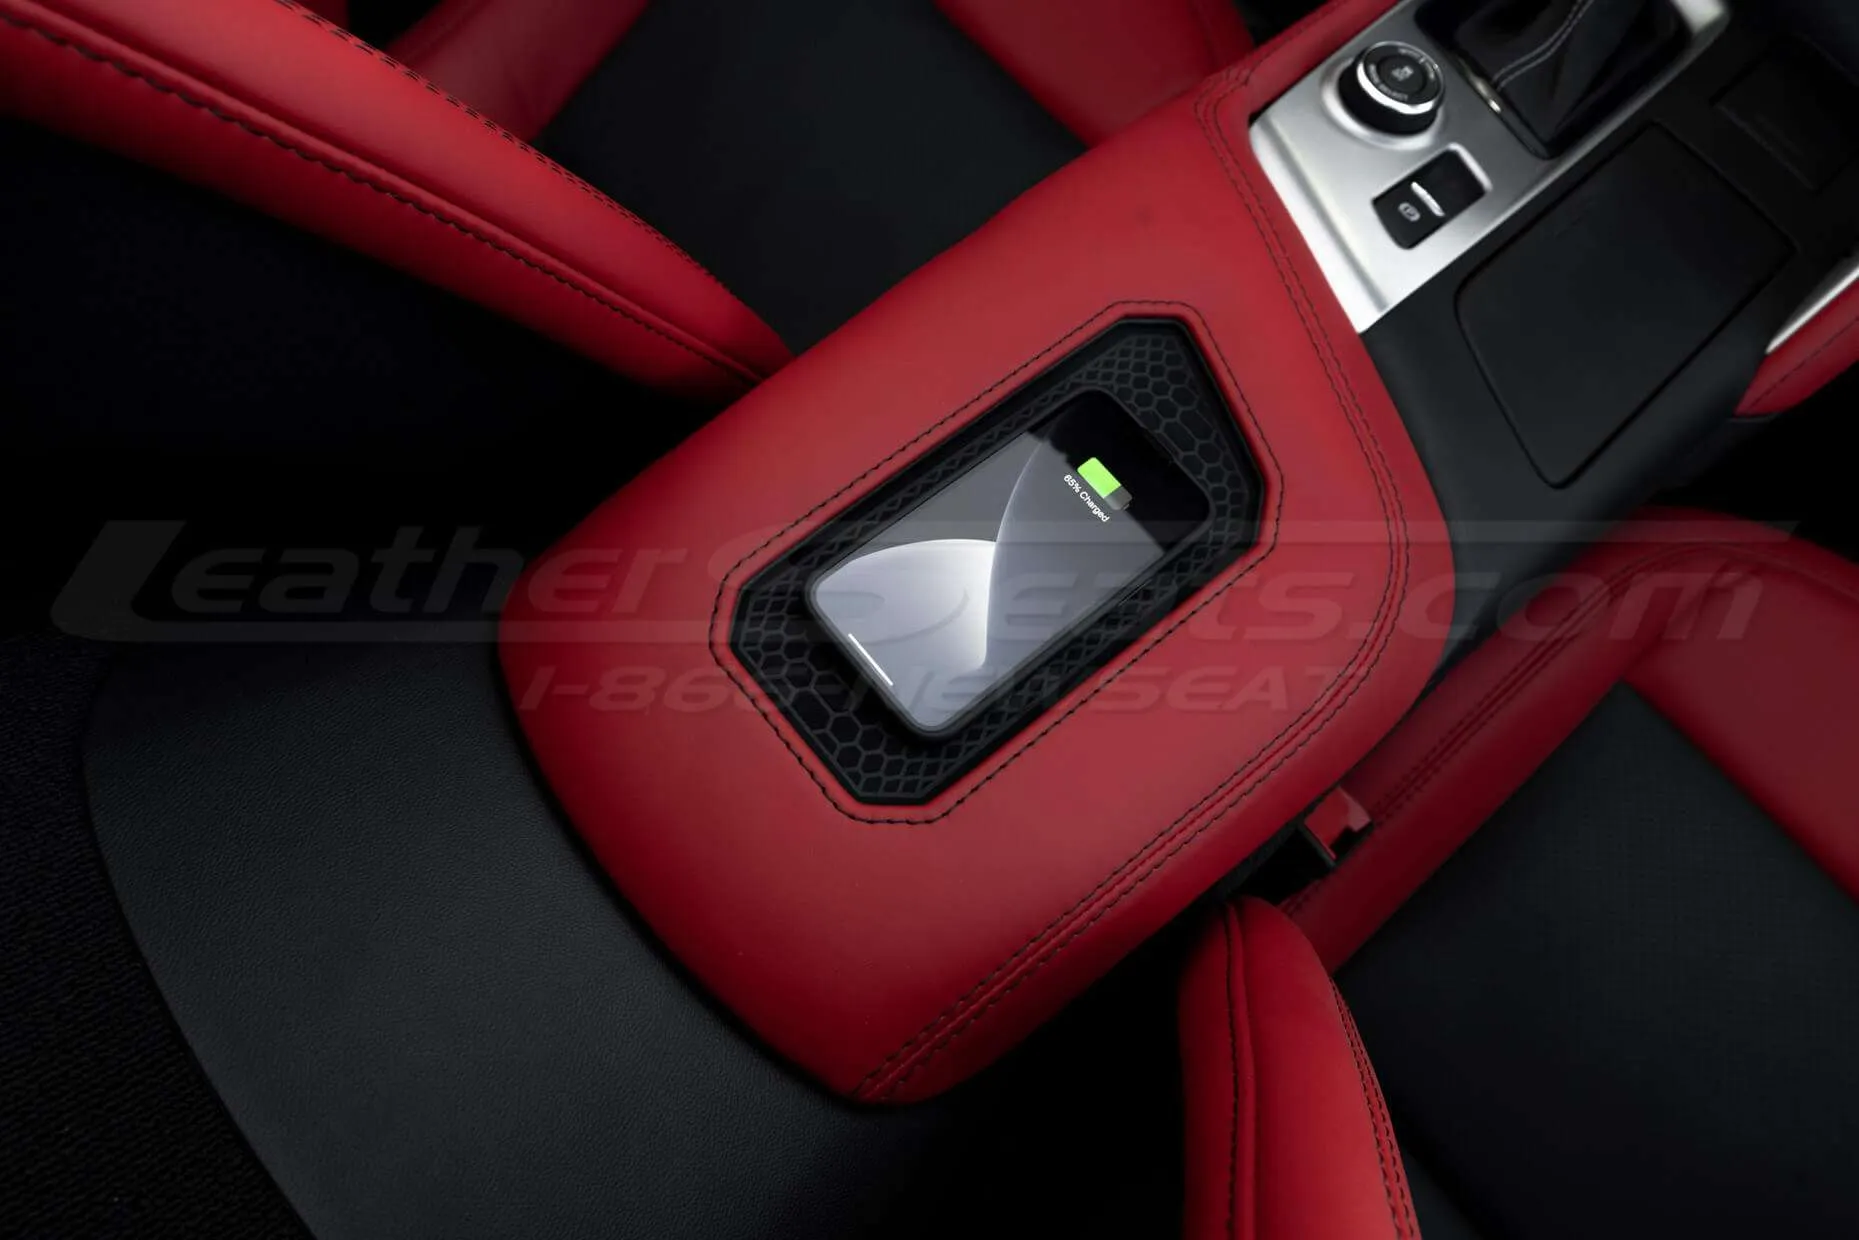 Back passenger view of sanctum console for Chevy Corvette